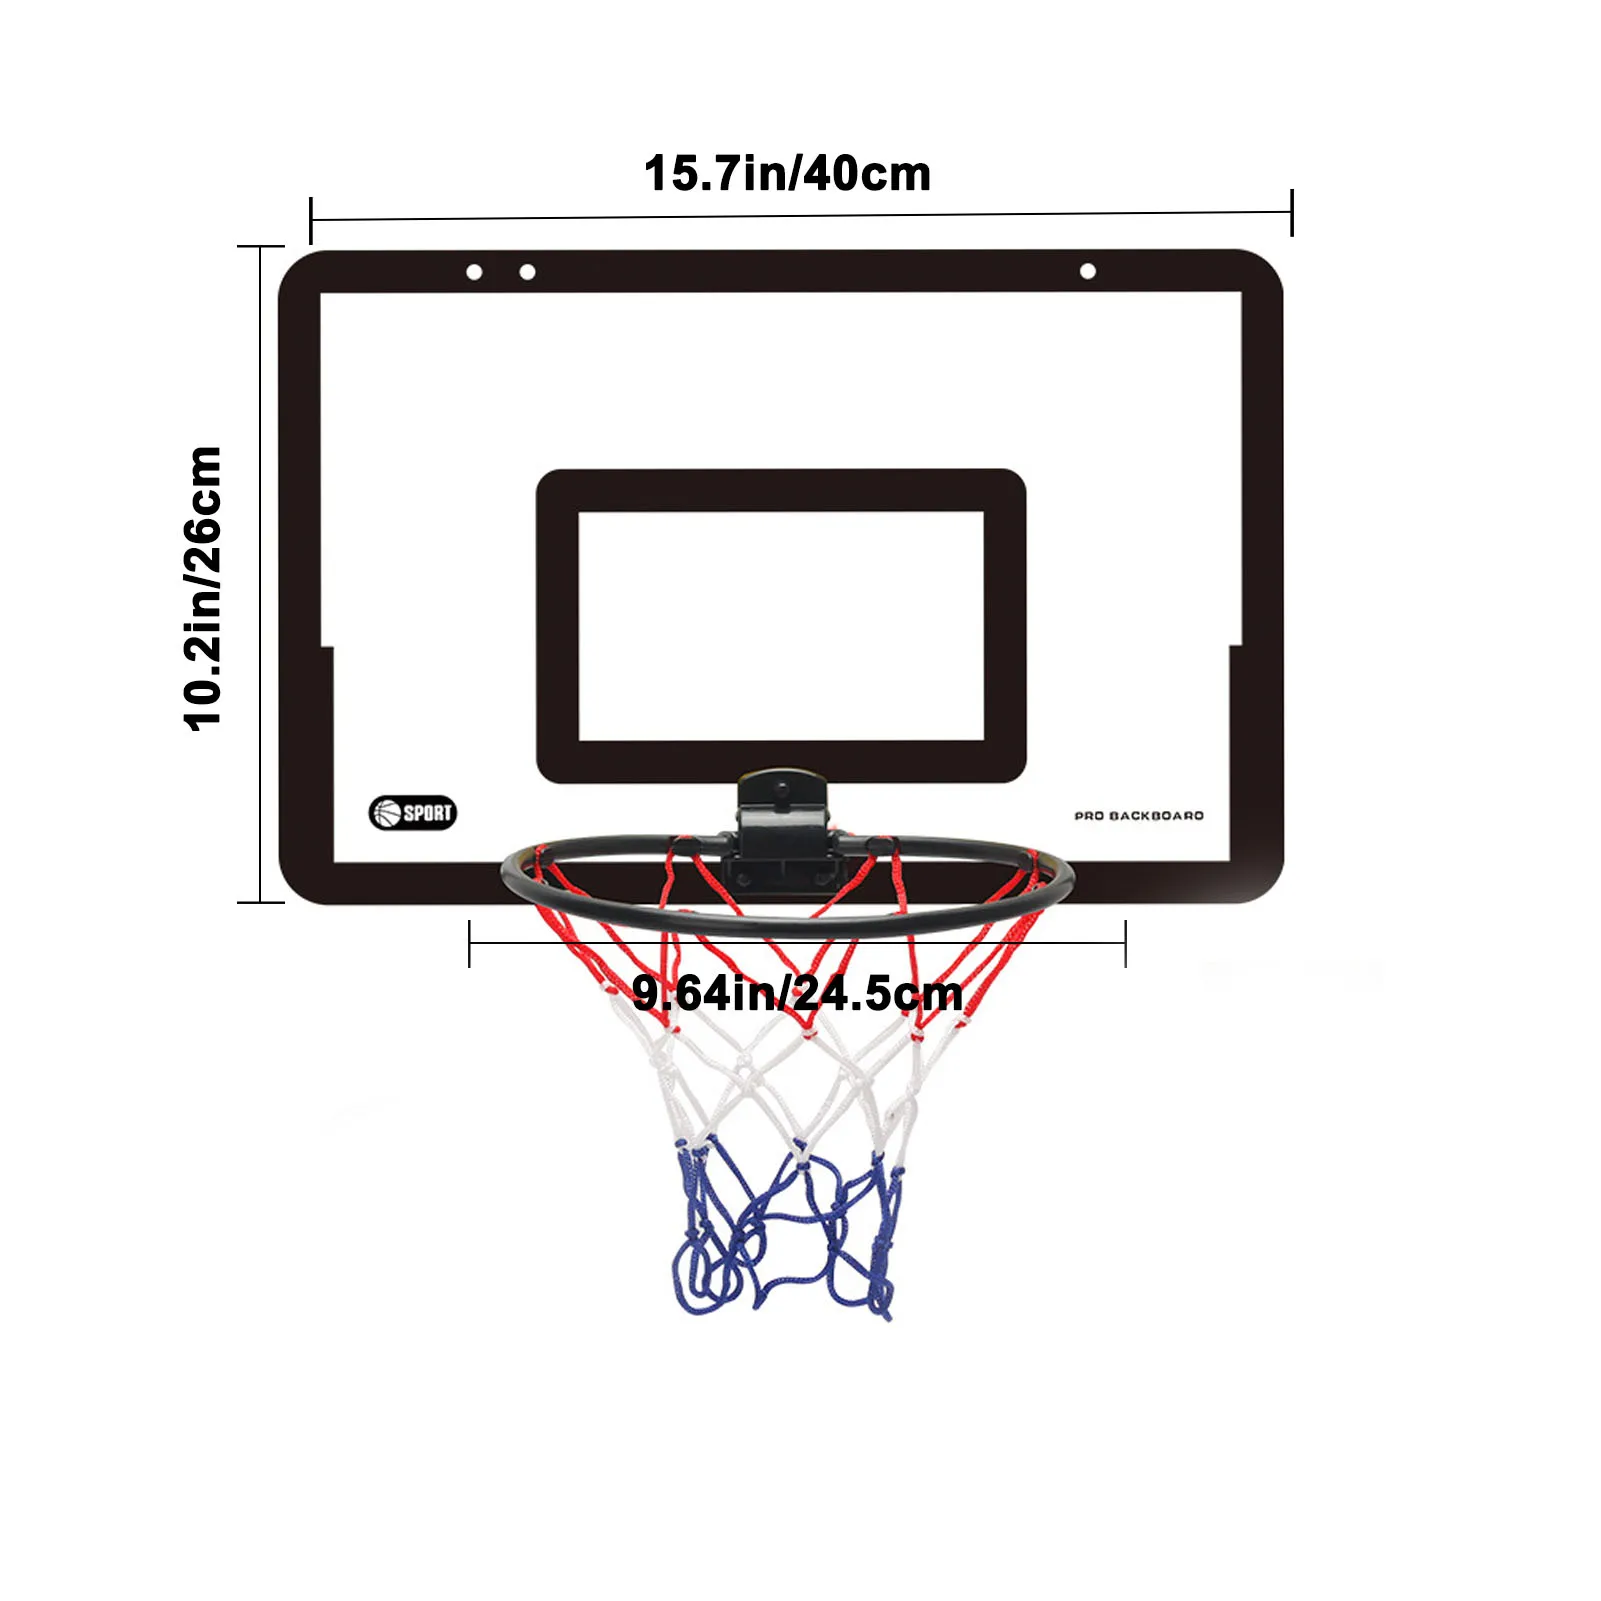 Mini aro de baloncesto portátil para niños y adultos, Kit de Juguetes Divertidos para fanáticos del baloncesto en el hogar, juego deportivo, suministros para niños y adultos